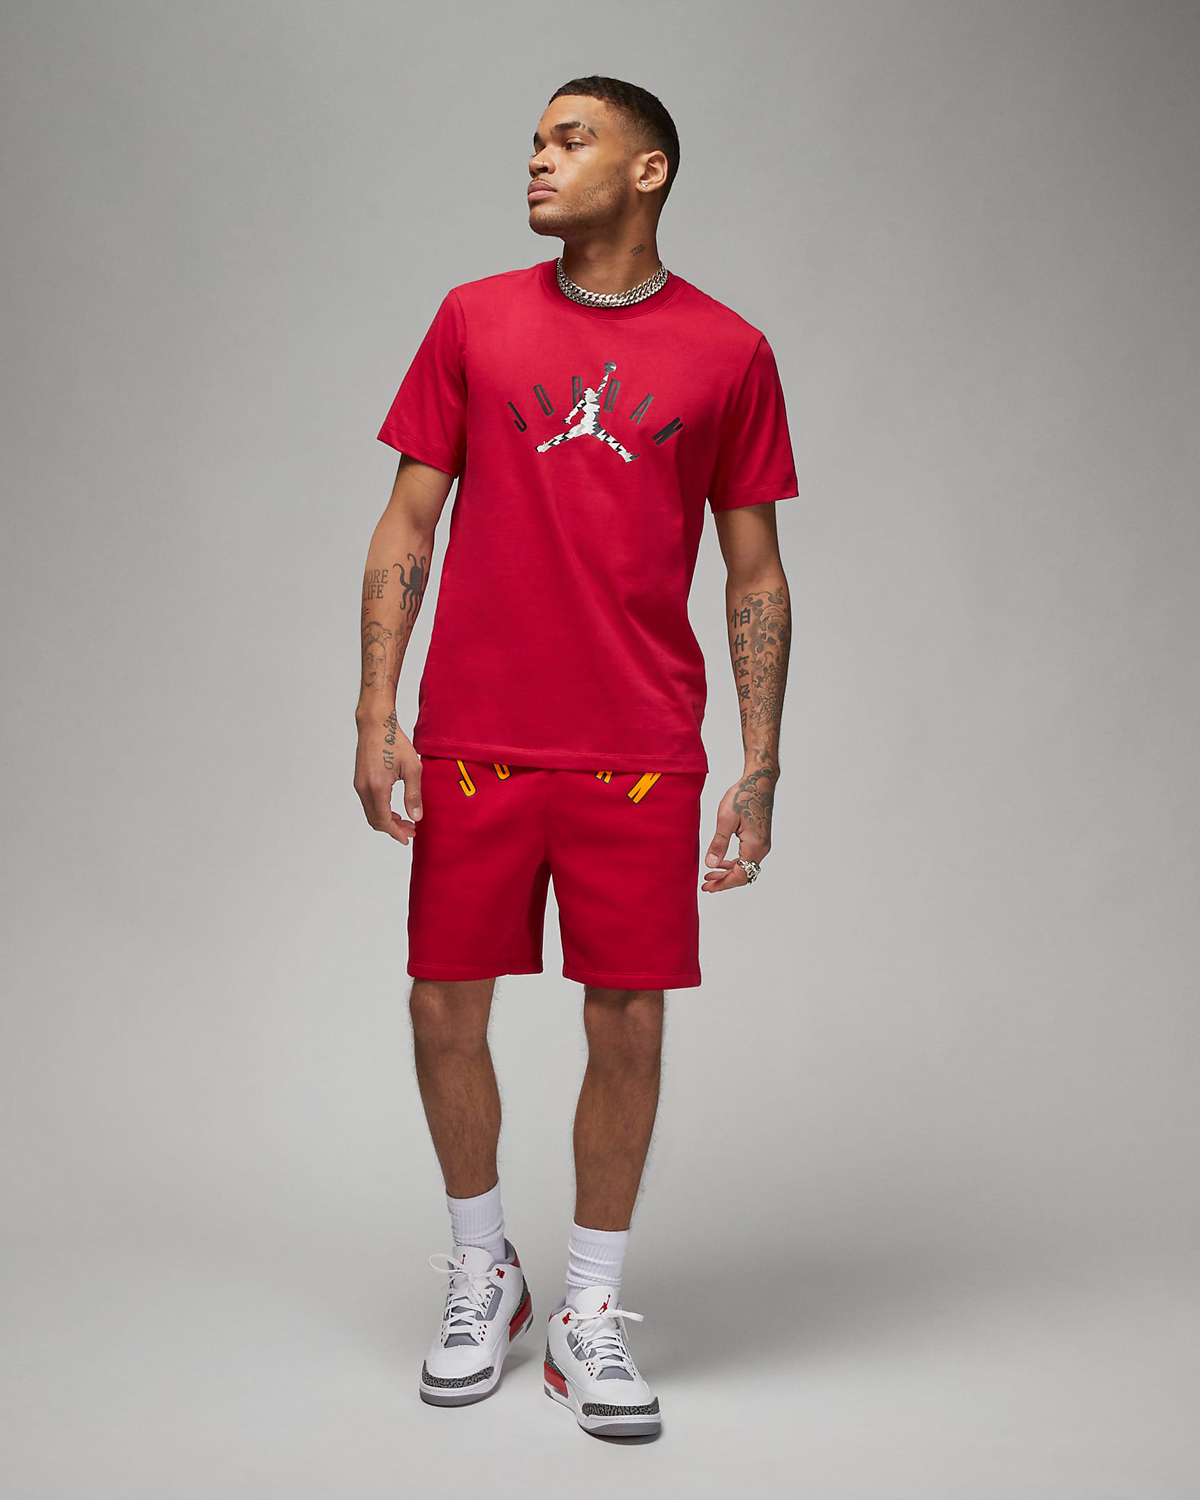 Jordan-Flight-MVP-T-Shirt-Cardinal-Red-Outfit